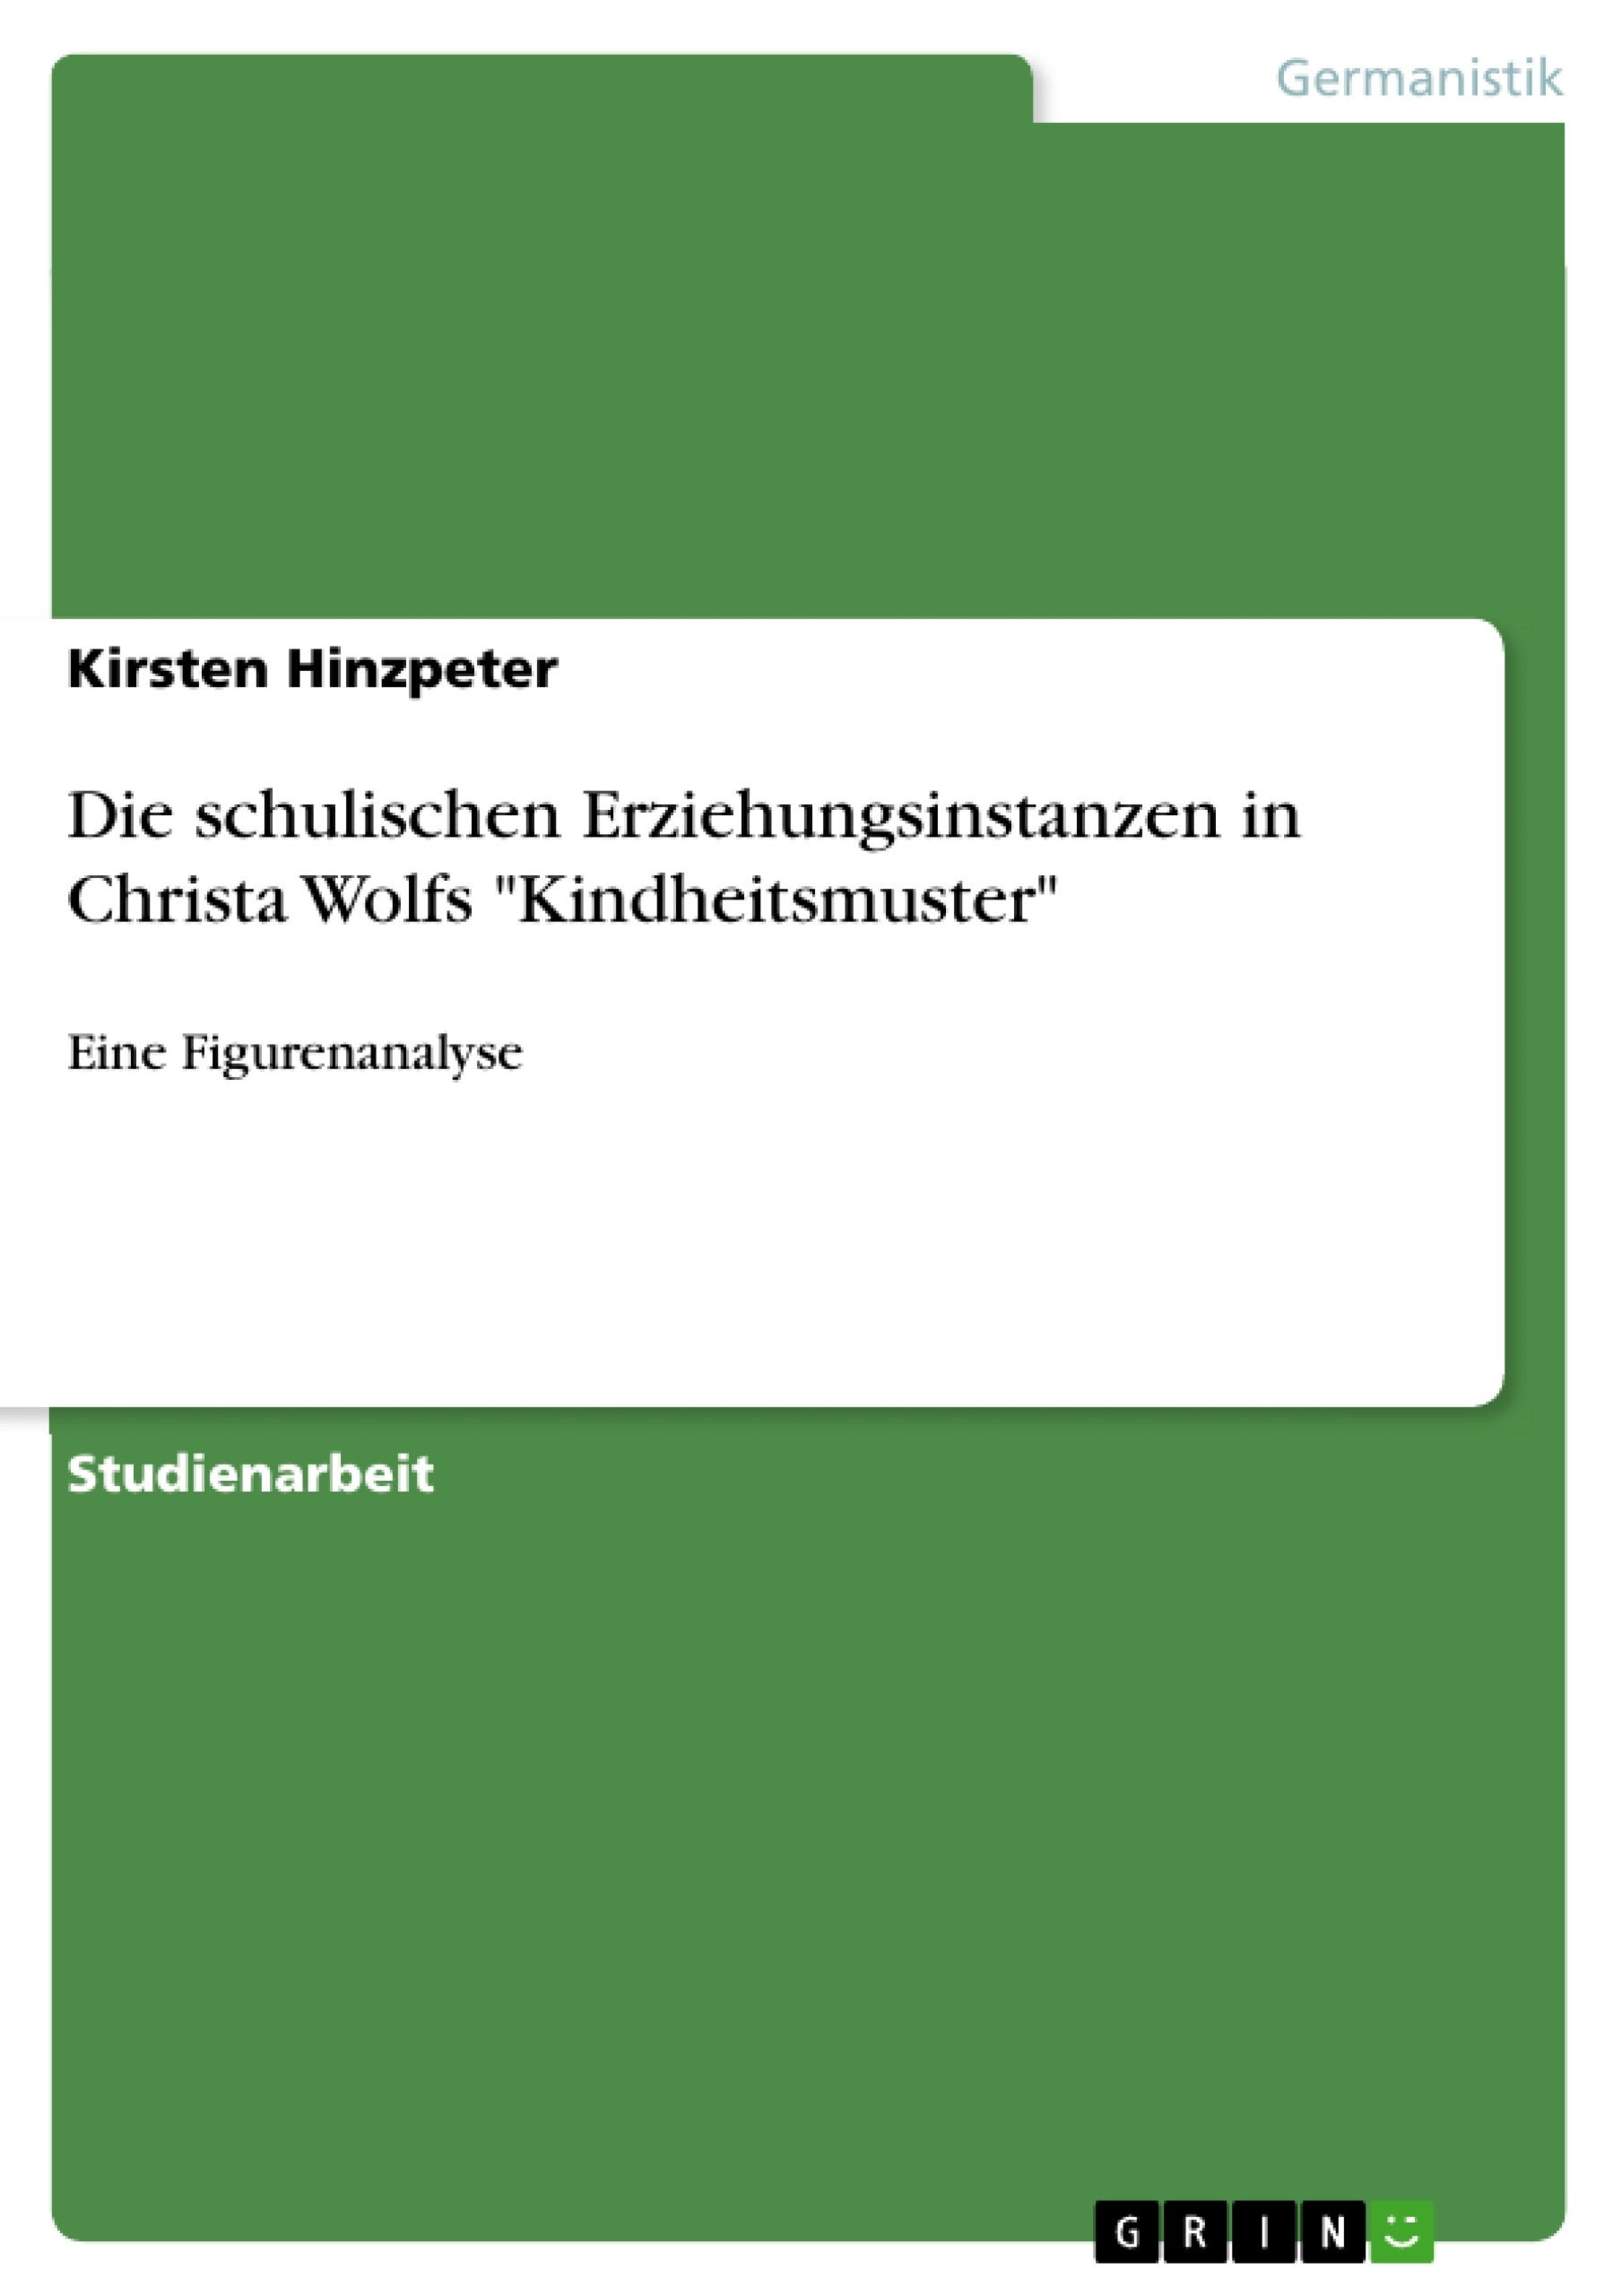 Title: Die schulischen Erziehungsinstanzen in Christa Wolfs "Kindheitsmuster"